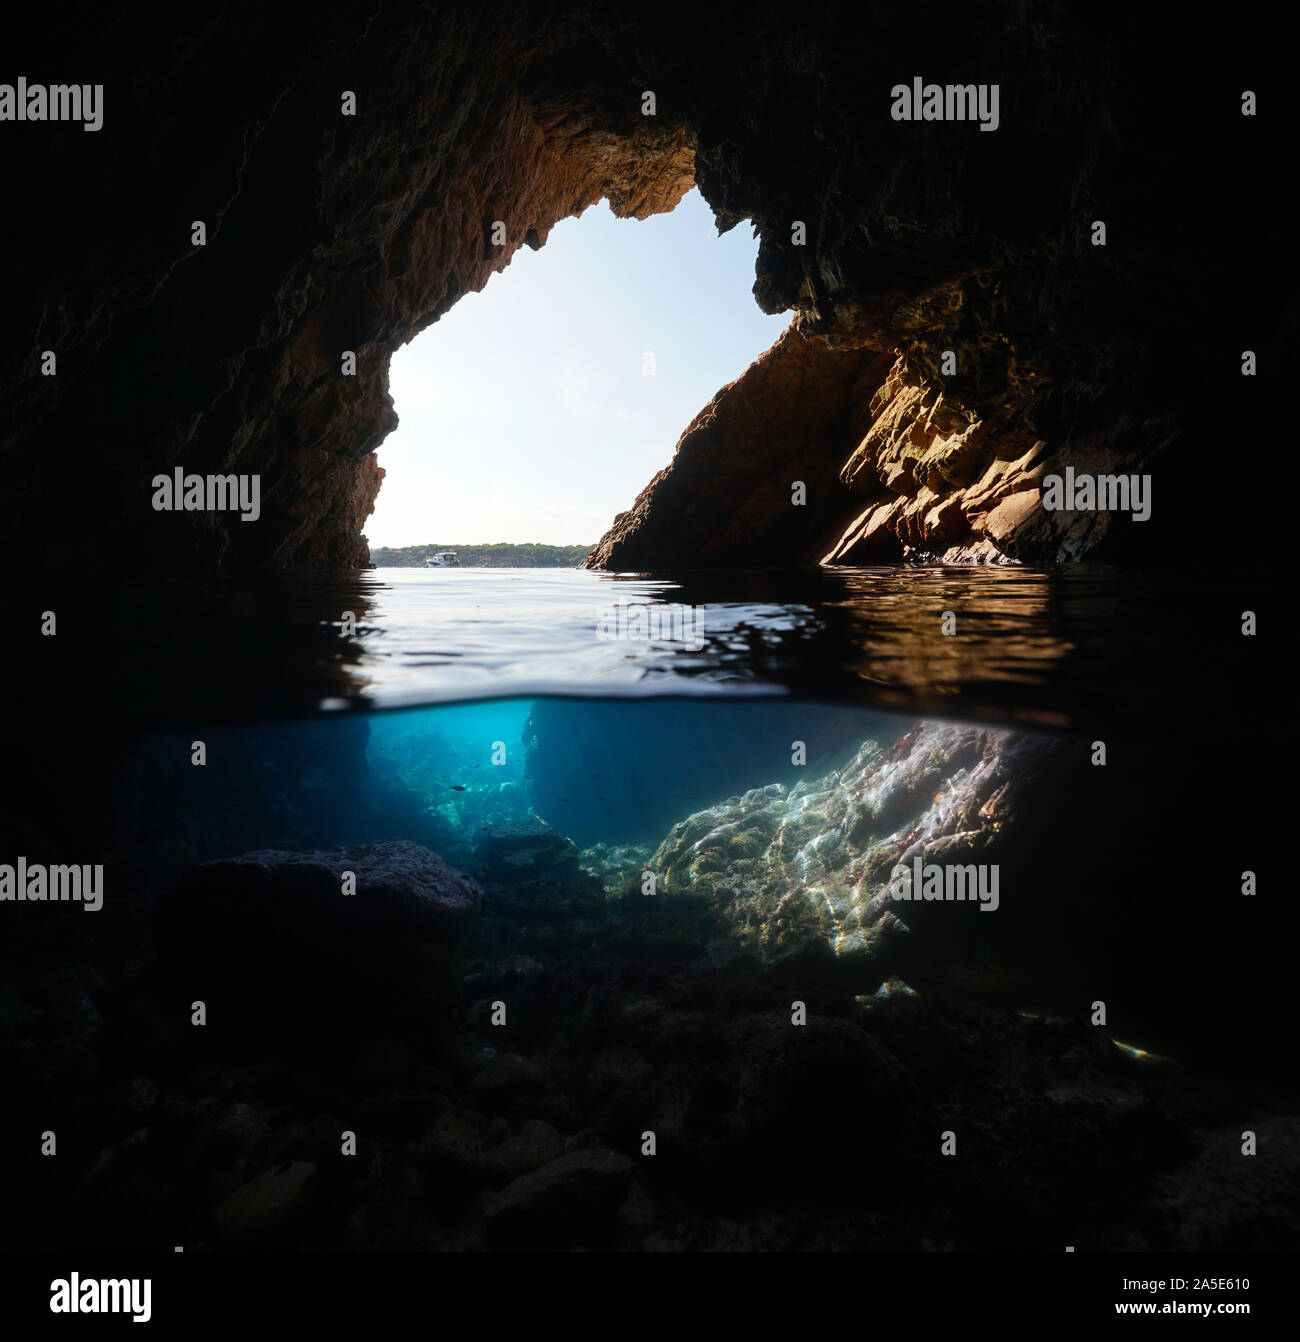 All'interno di una grotta marina sulla riva, vista suddivisa al di sopra e al di sotto di acqua, Mediterraneo, Spagna, in Costa Brava Catalogna, Palamos Foto Stock